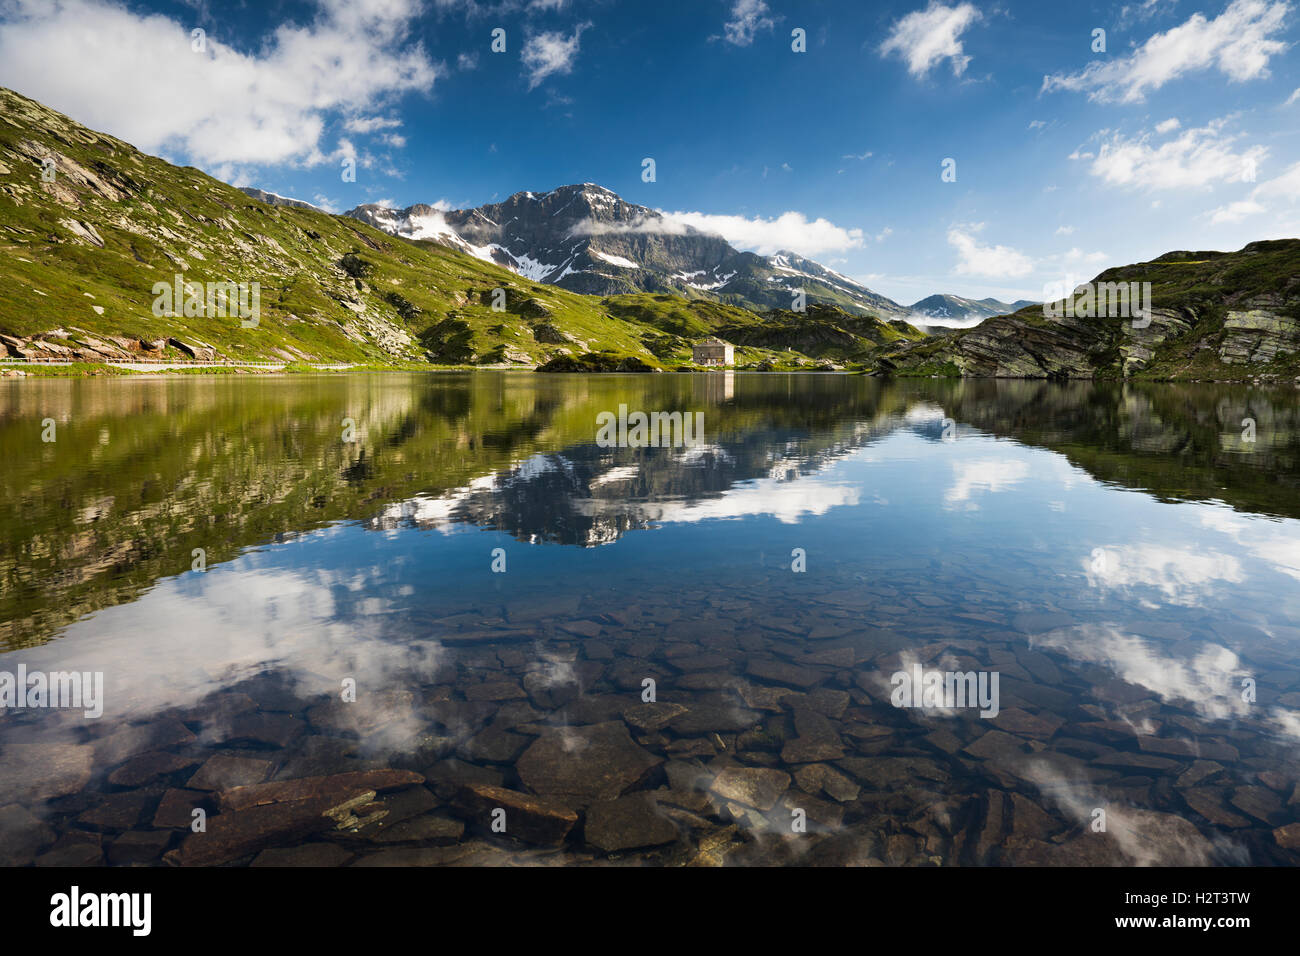 Col de San Bernardino avec de l'eau reflet, France Alpes, Suisse, Canton des Grisons Banque D'Images